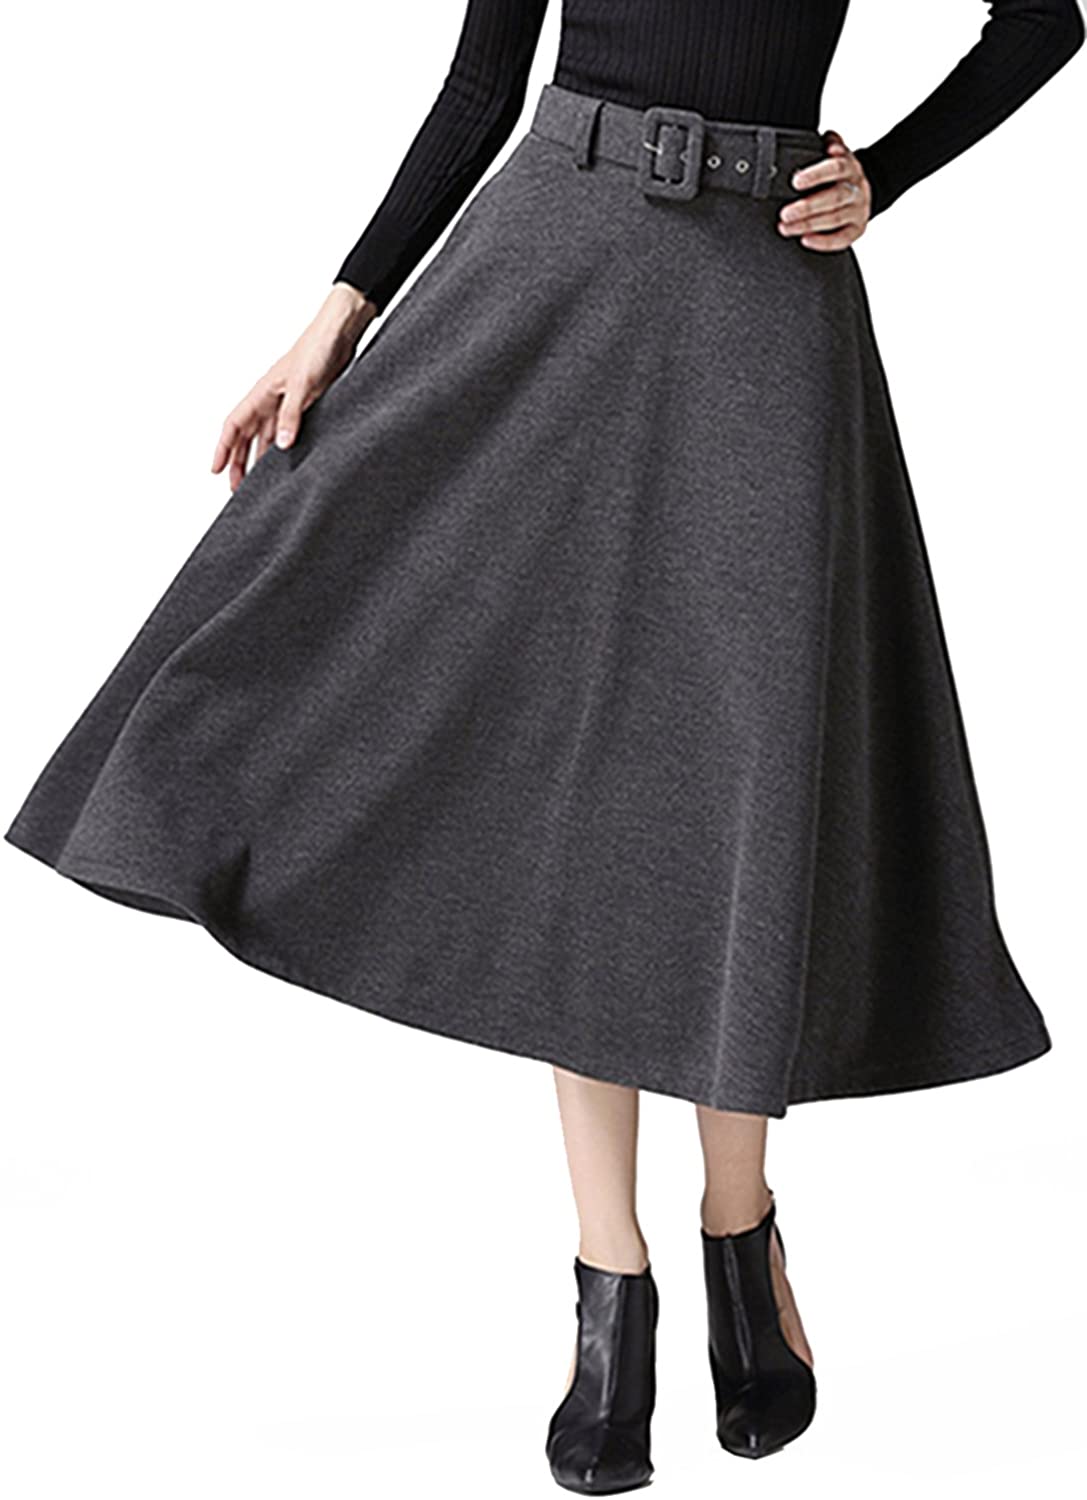 Choies Women's High Waist A-line Flared Long Skirt Winter Fall Midi Skirt 